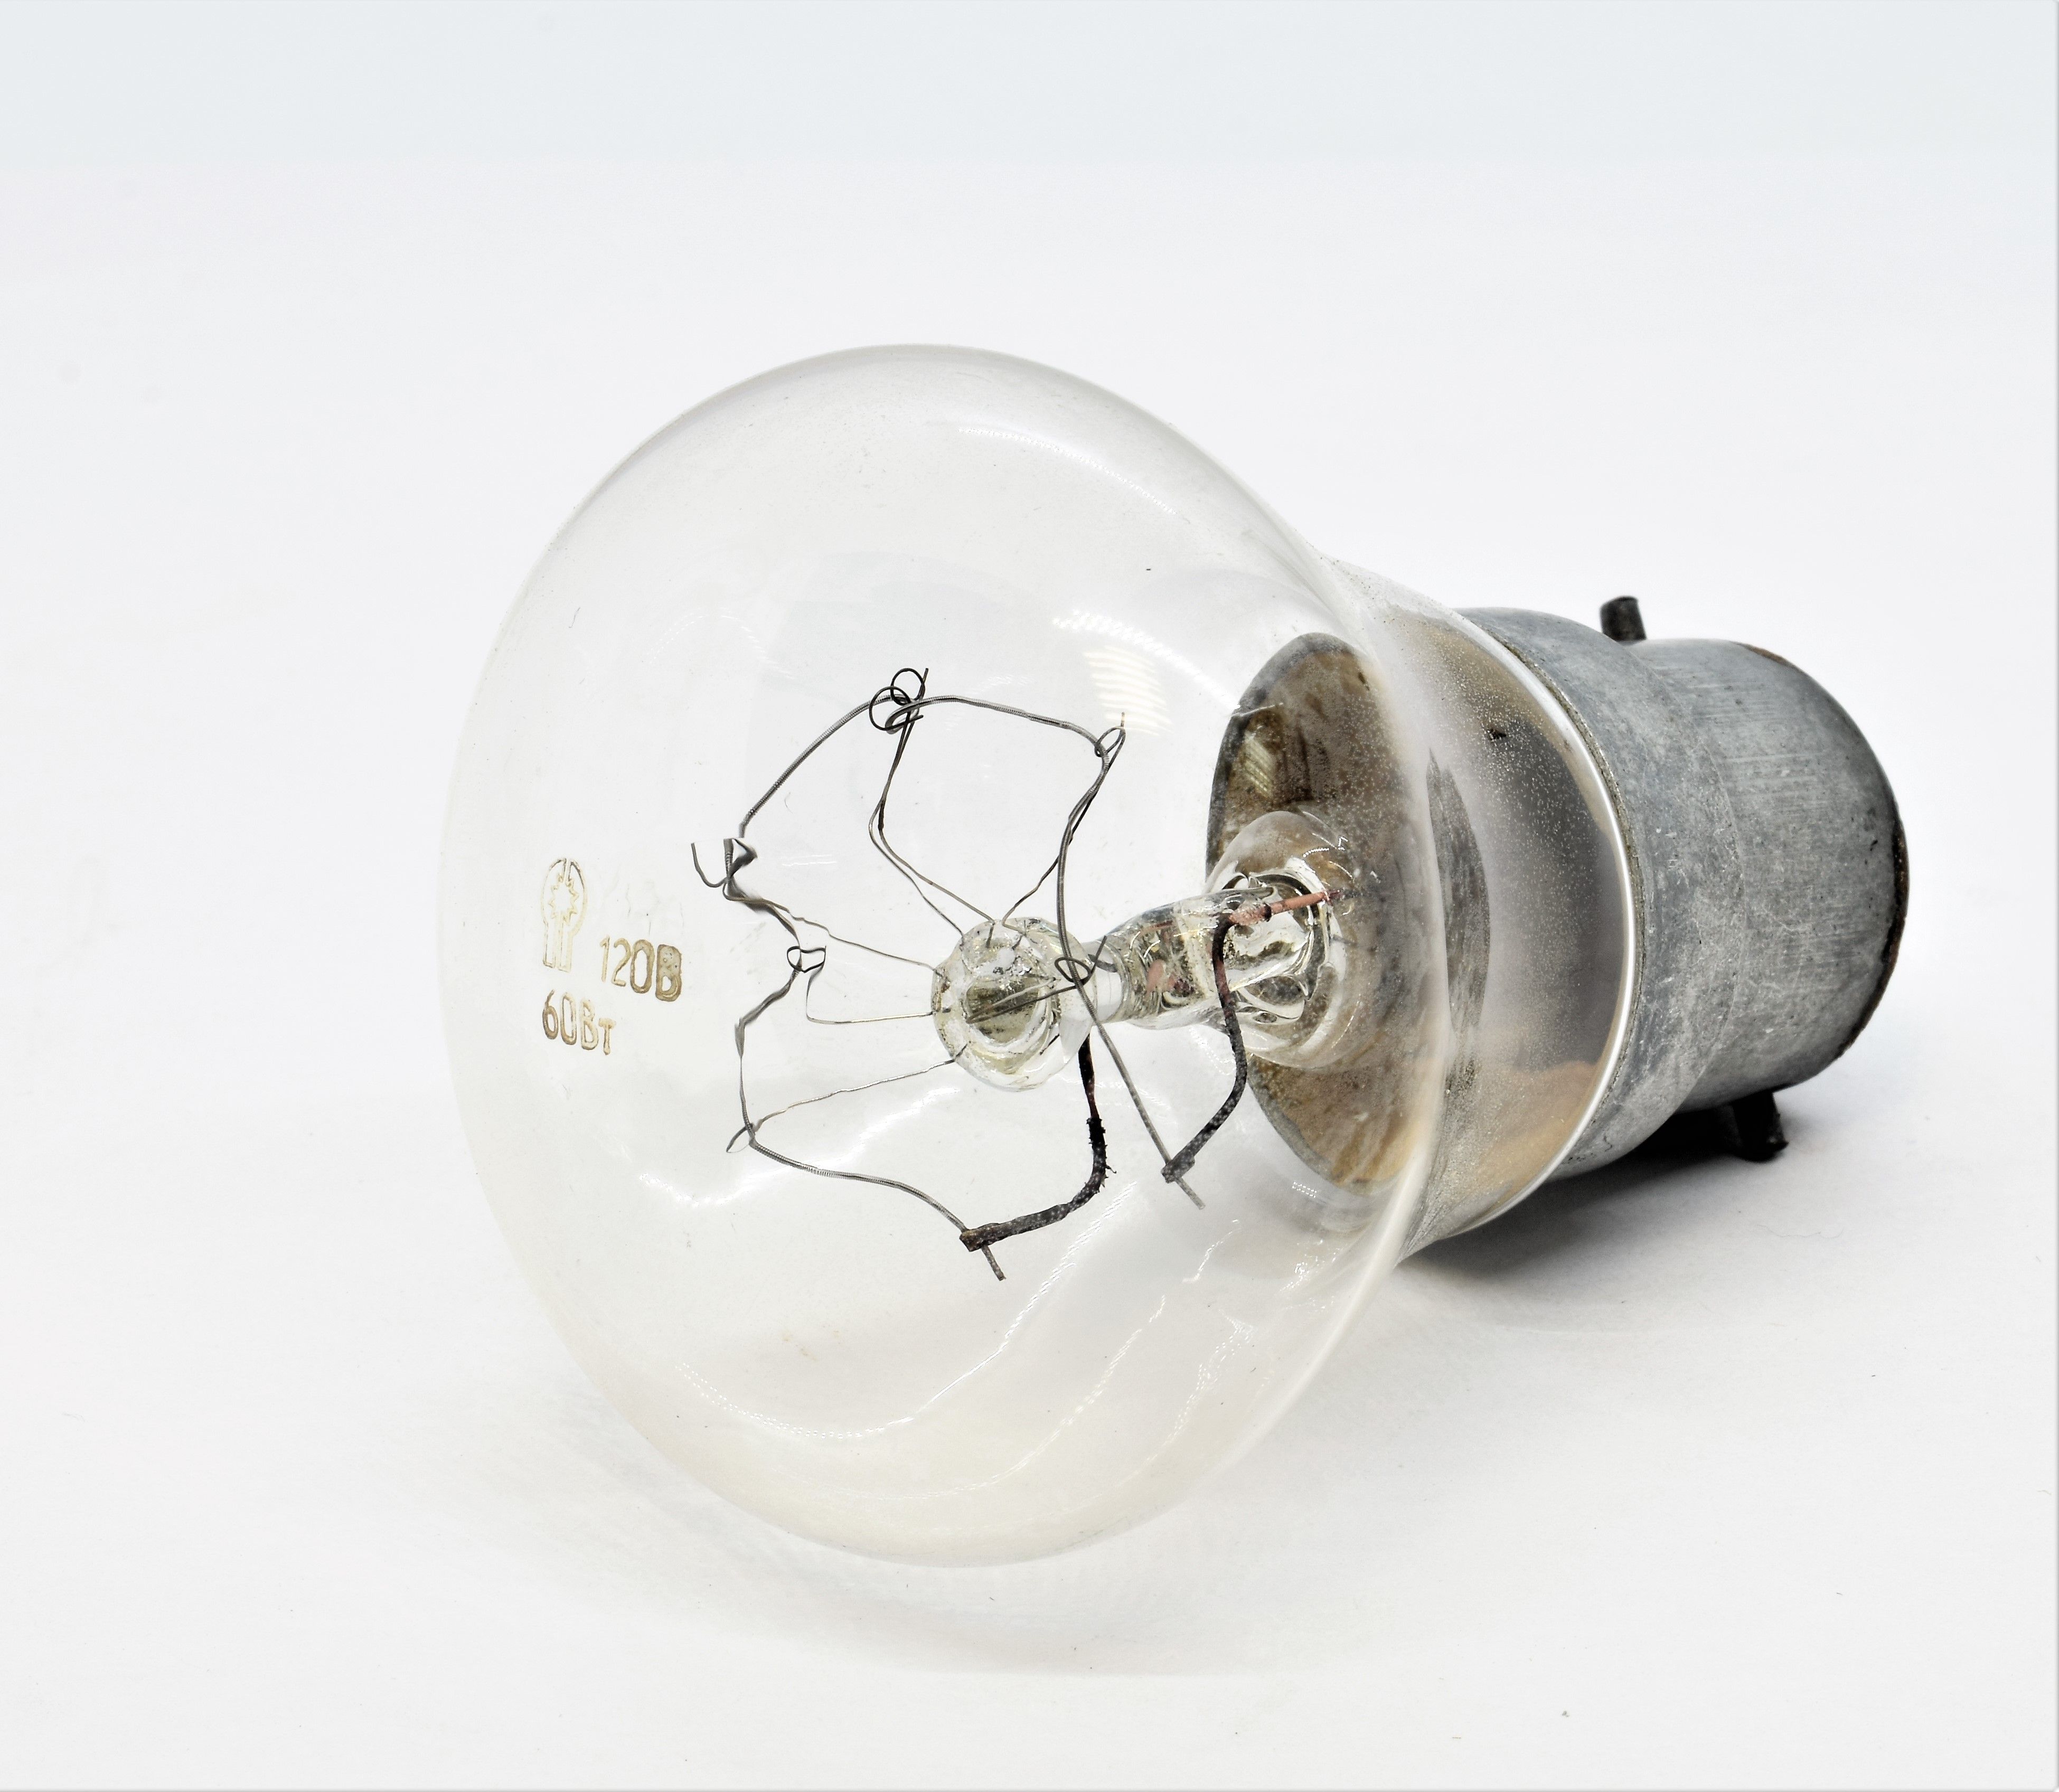 Лампа накаливания ЖГ 120-60Вт железнодорожная цоколь В22d